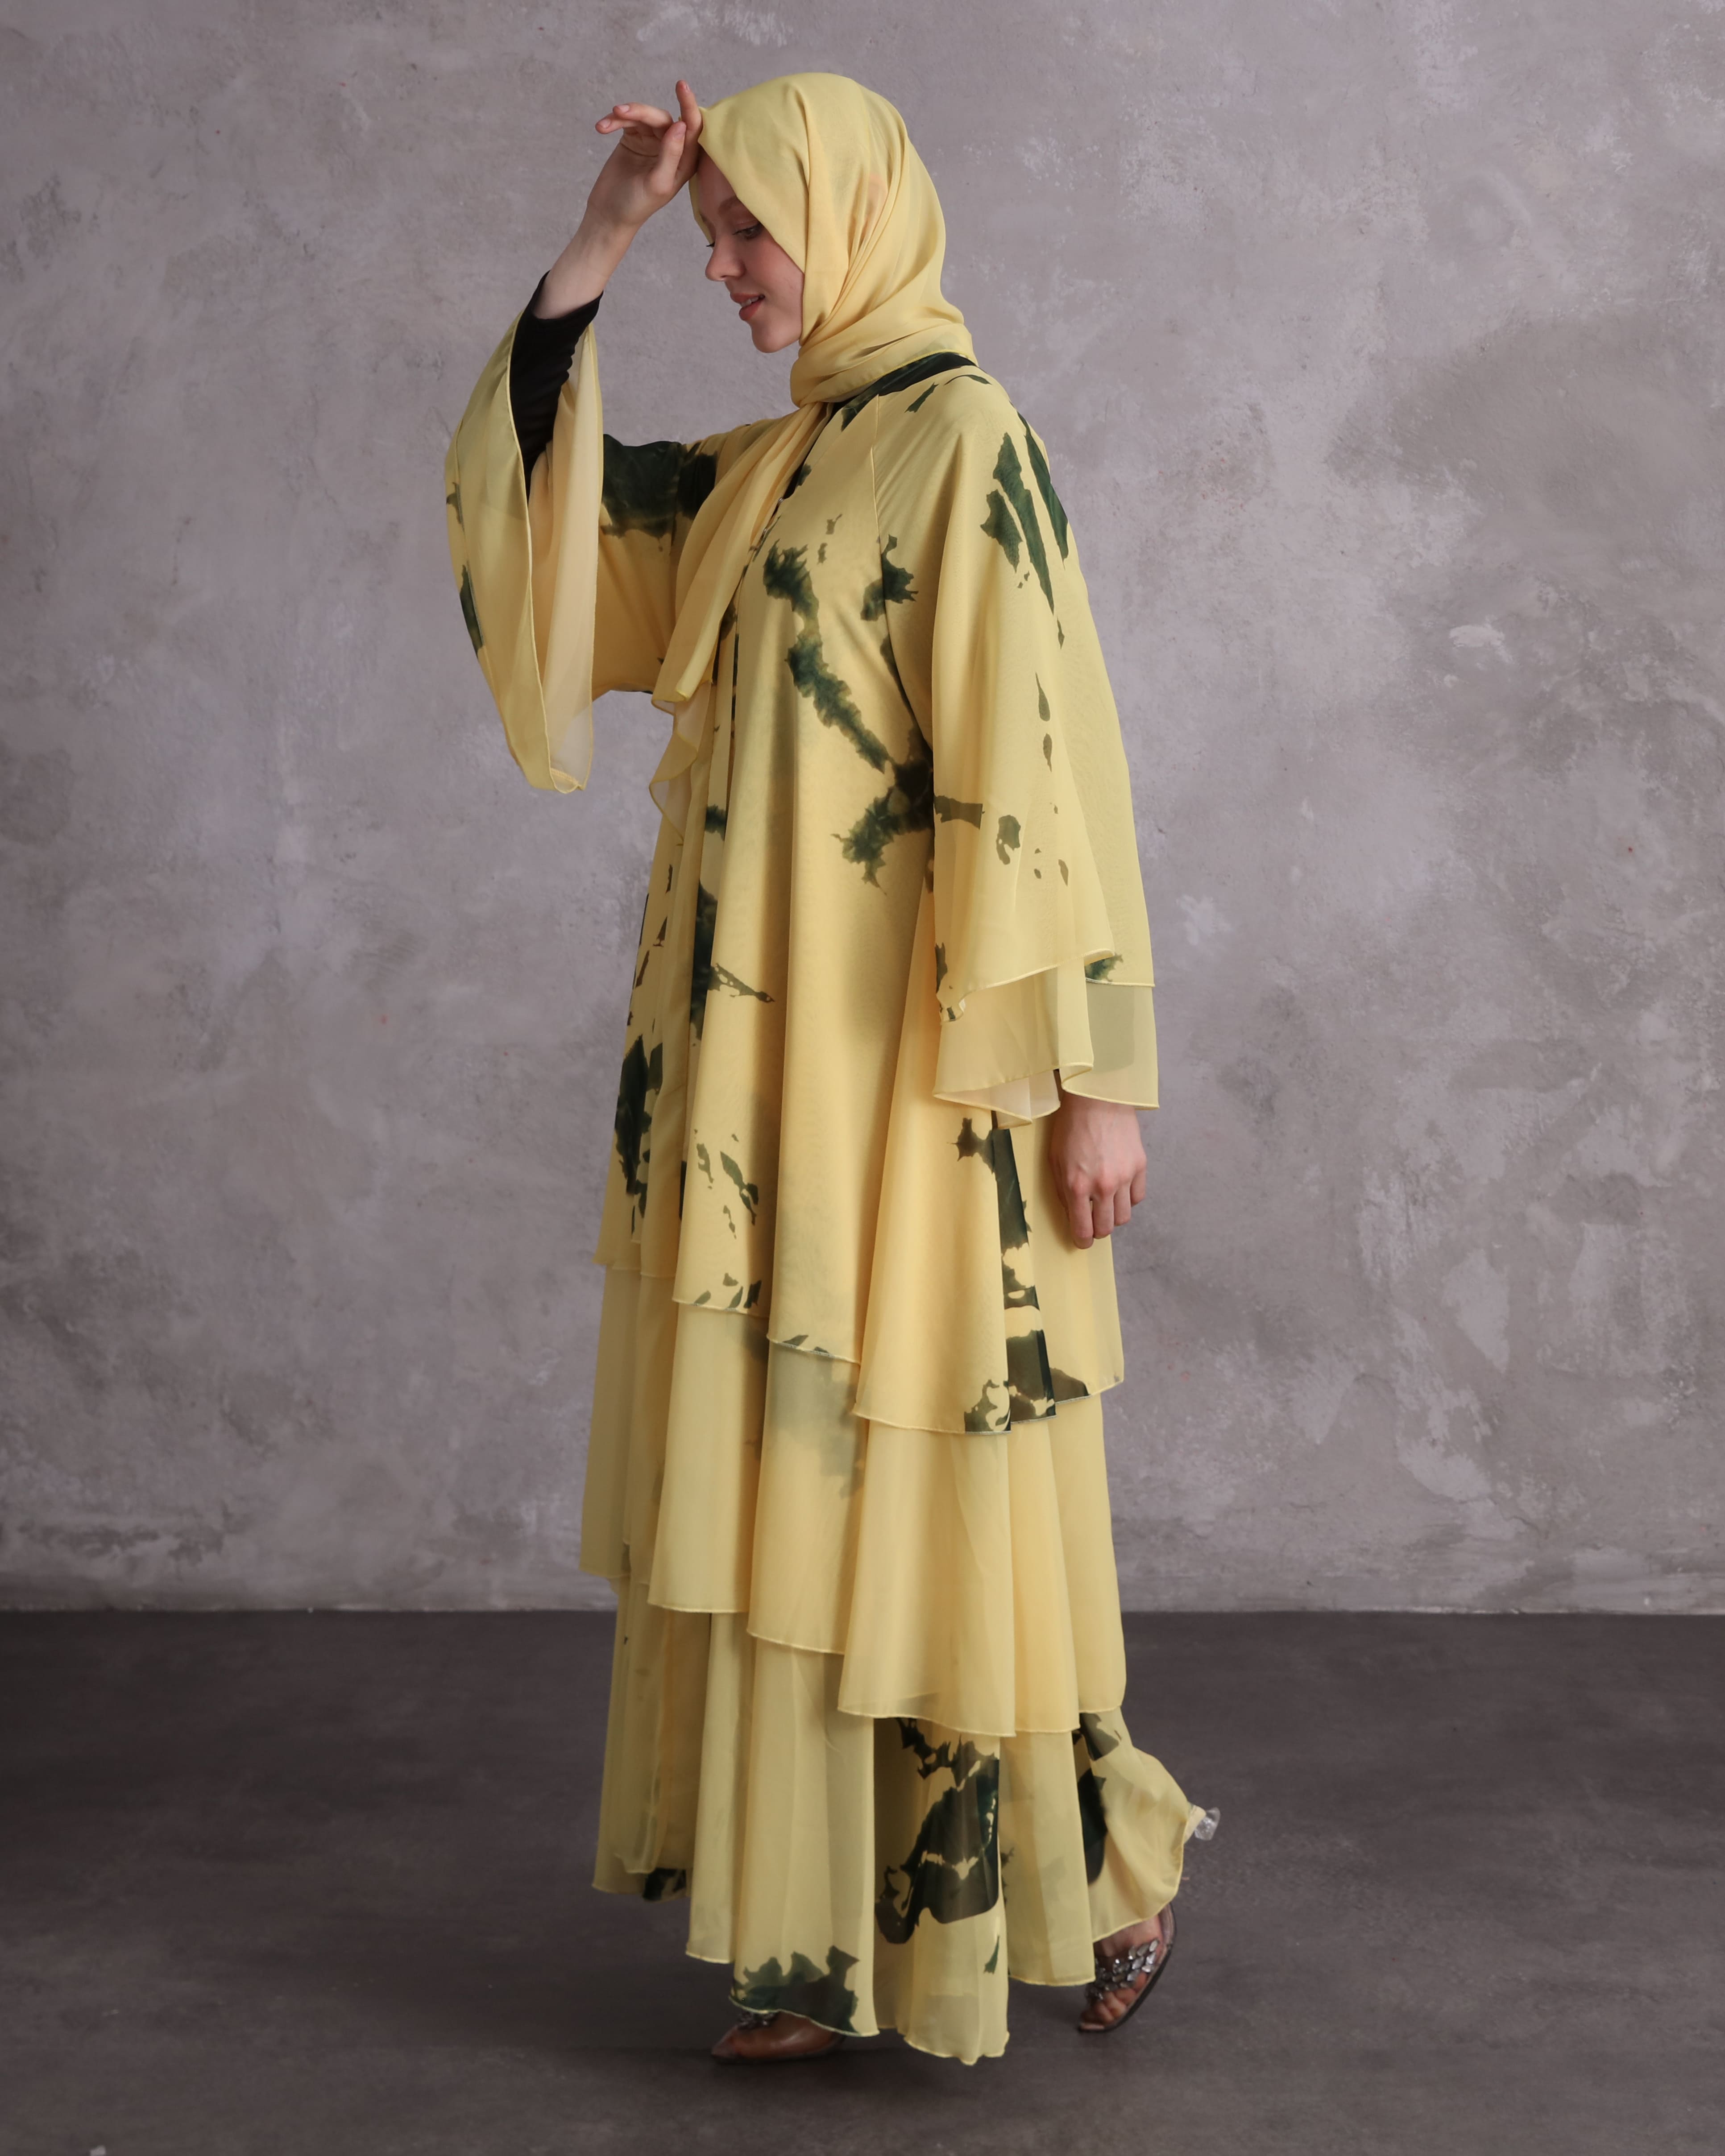 Stunning Classic 3 Layer Cream & Green Tiered Abaya